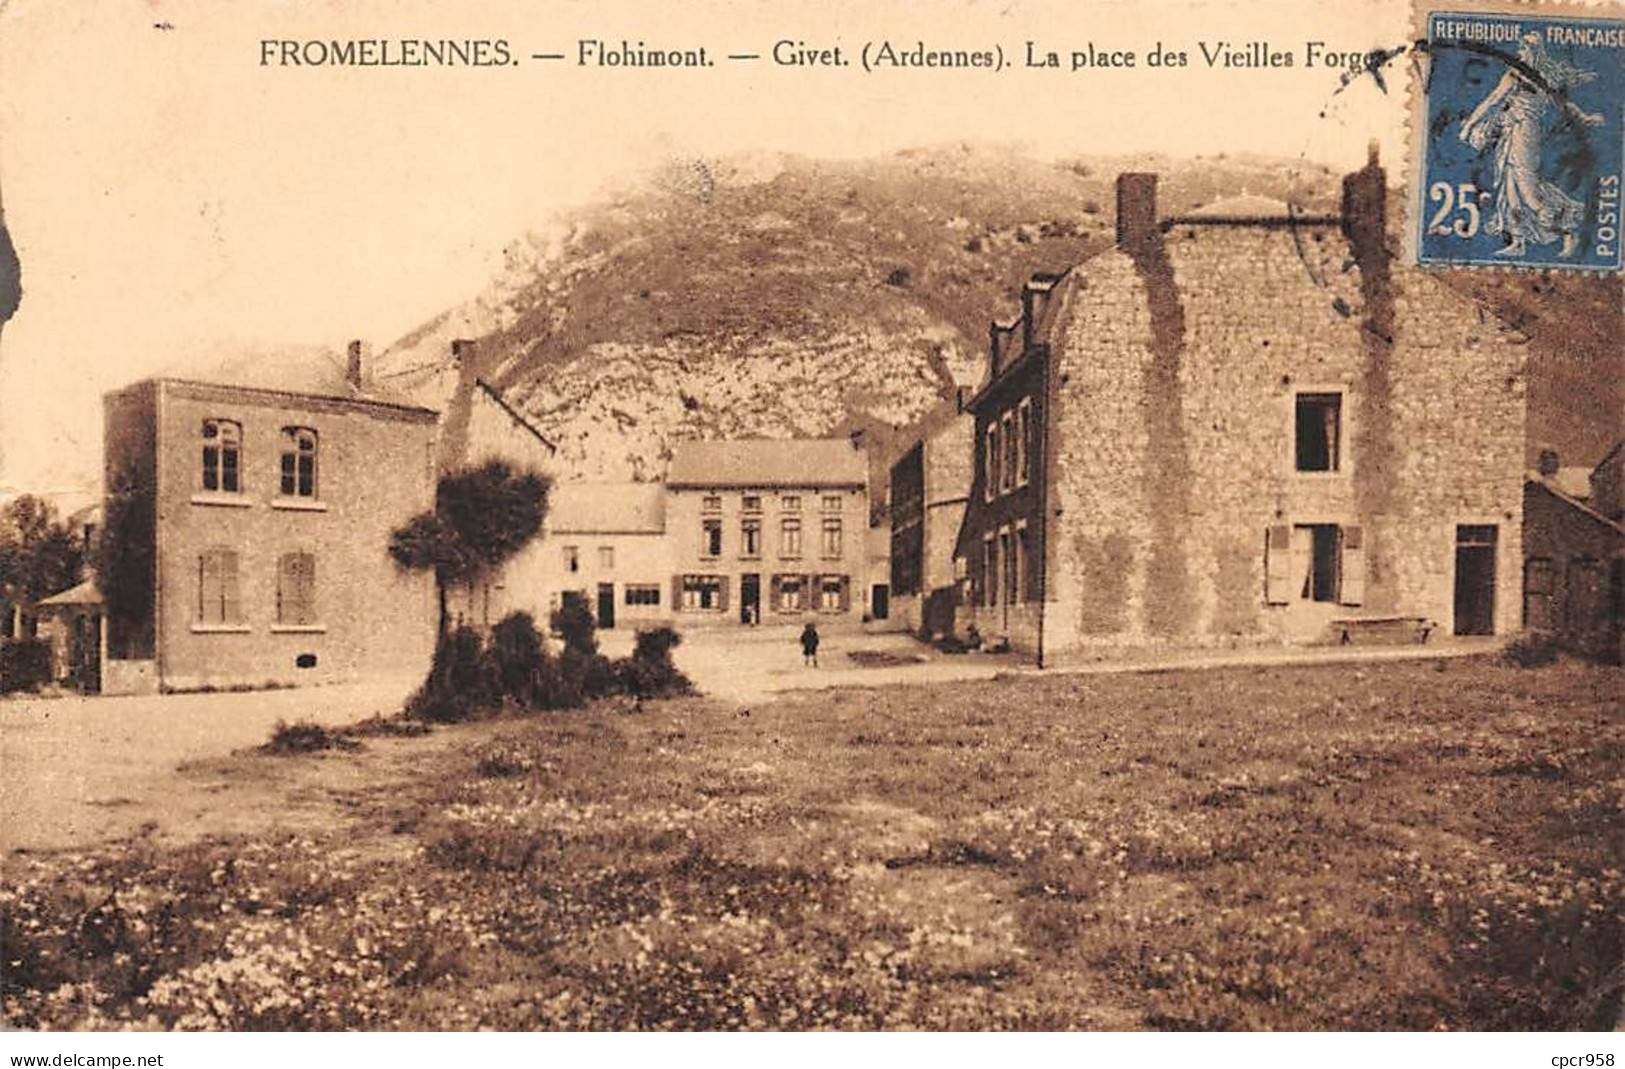 08 - GIVET - SAN23882 - Fromelennes - La Place Des Vieilles Forges - Givet